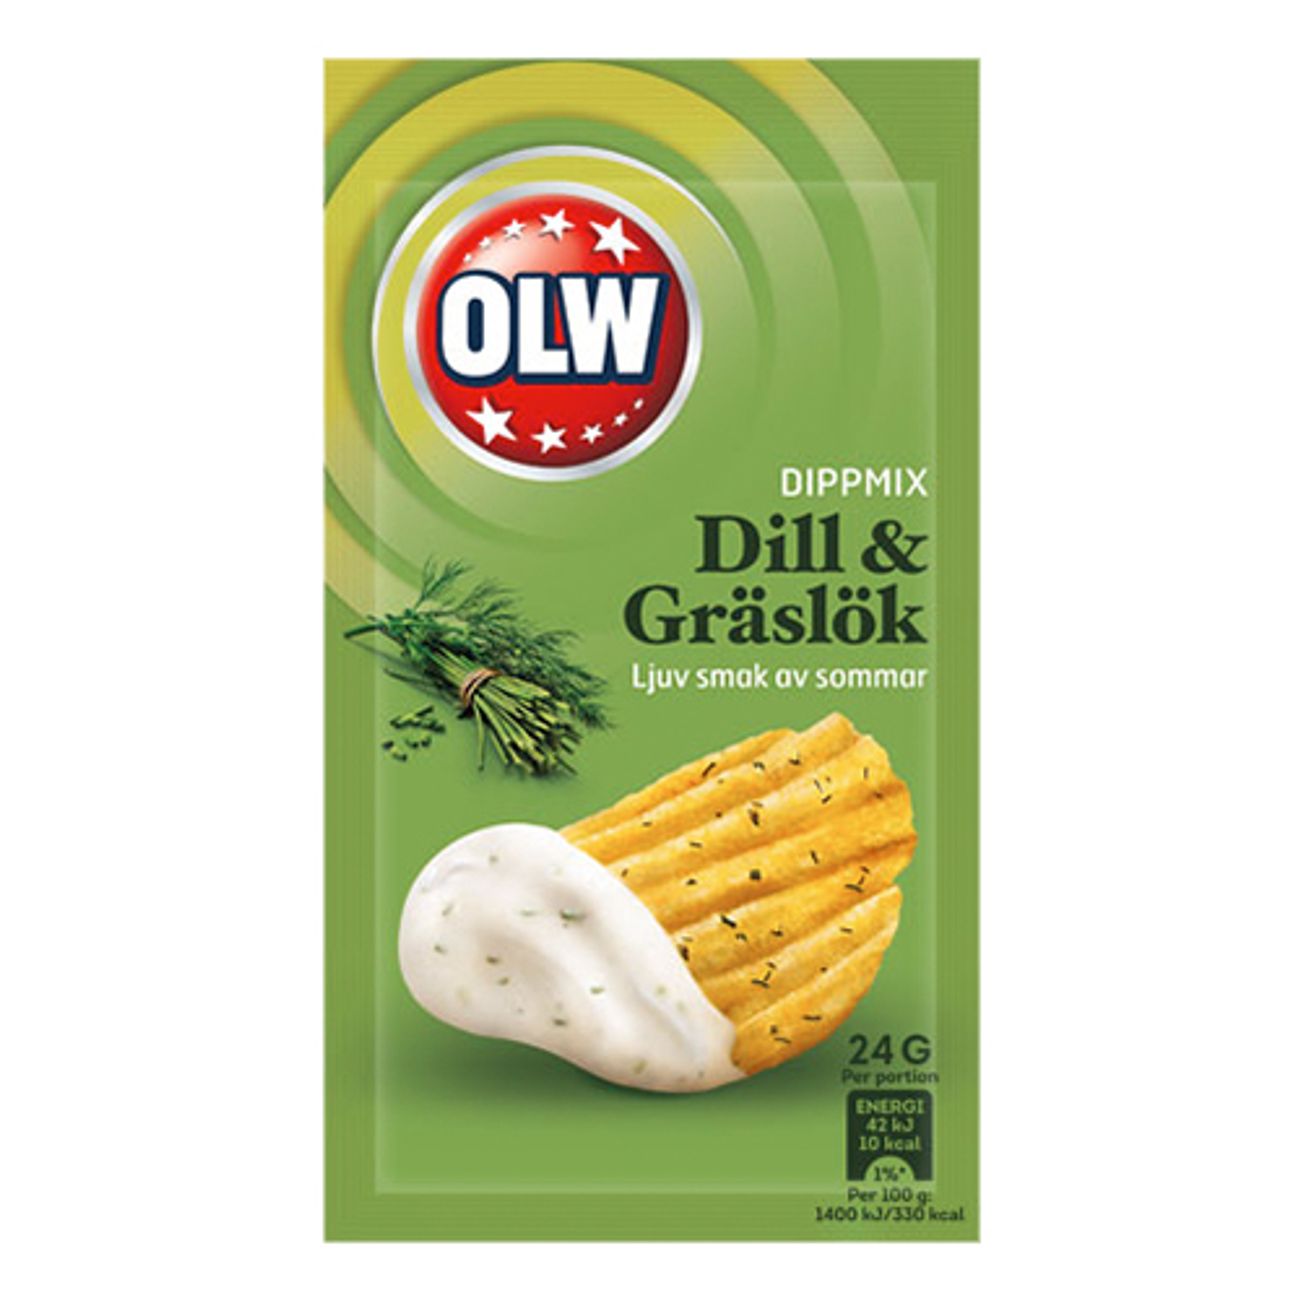 olw-dipmix-dill-graslok-1